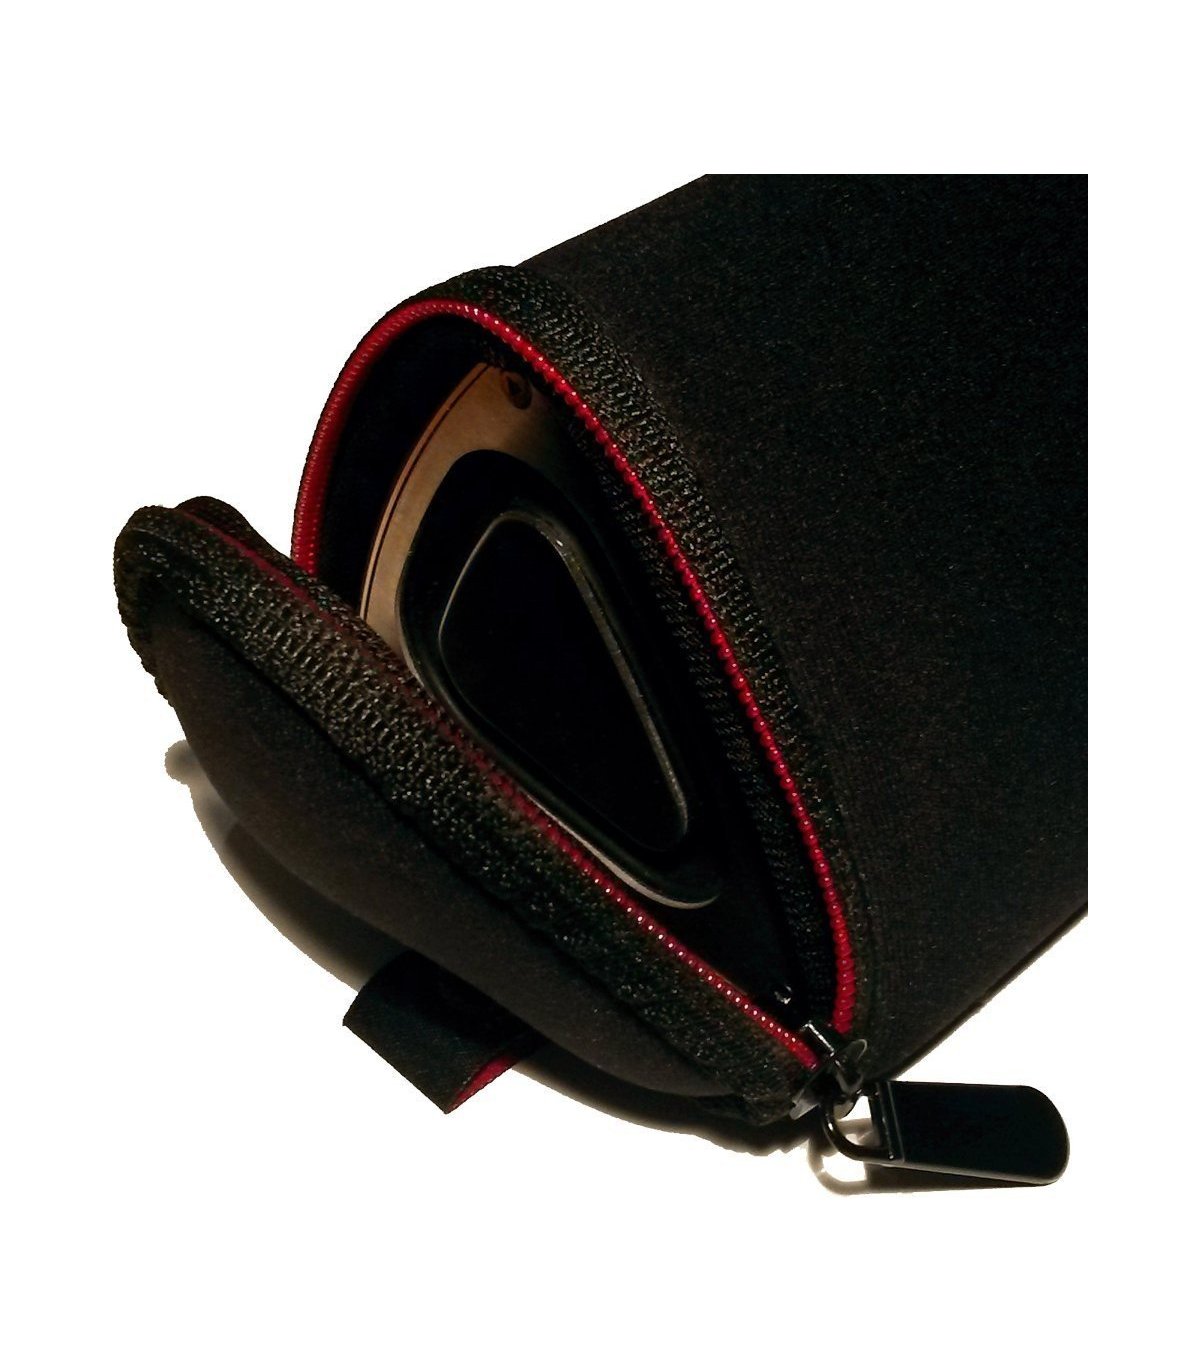 Neoprene bag for Chill Fidelity & SP-1 Bluetooth speakers